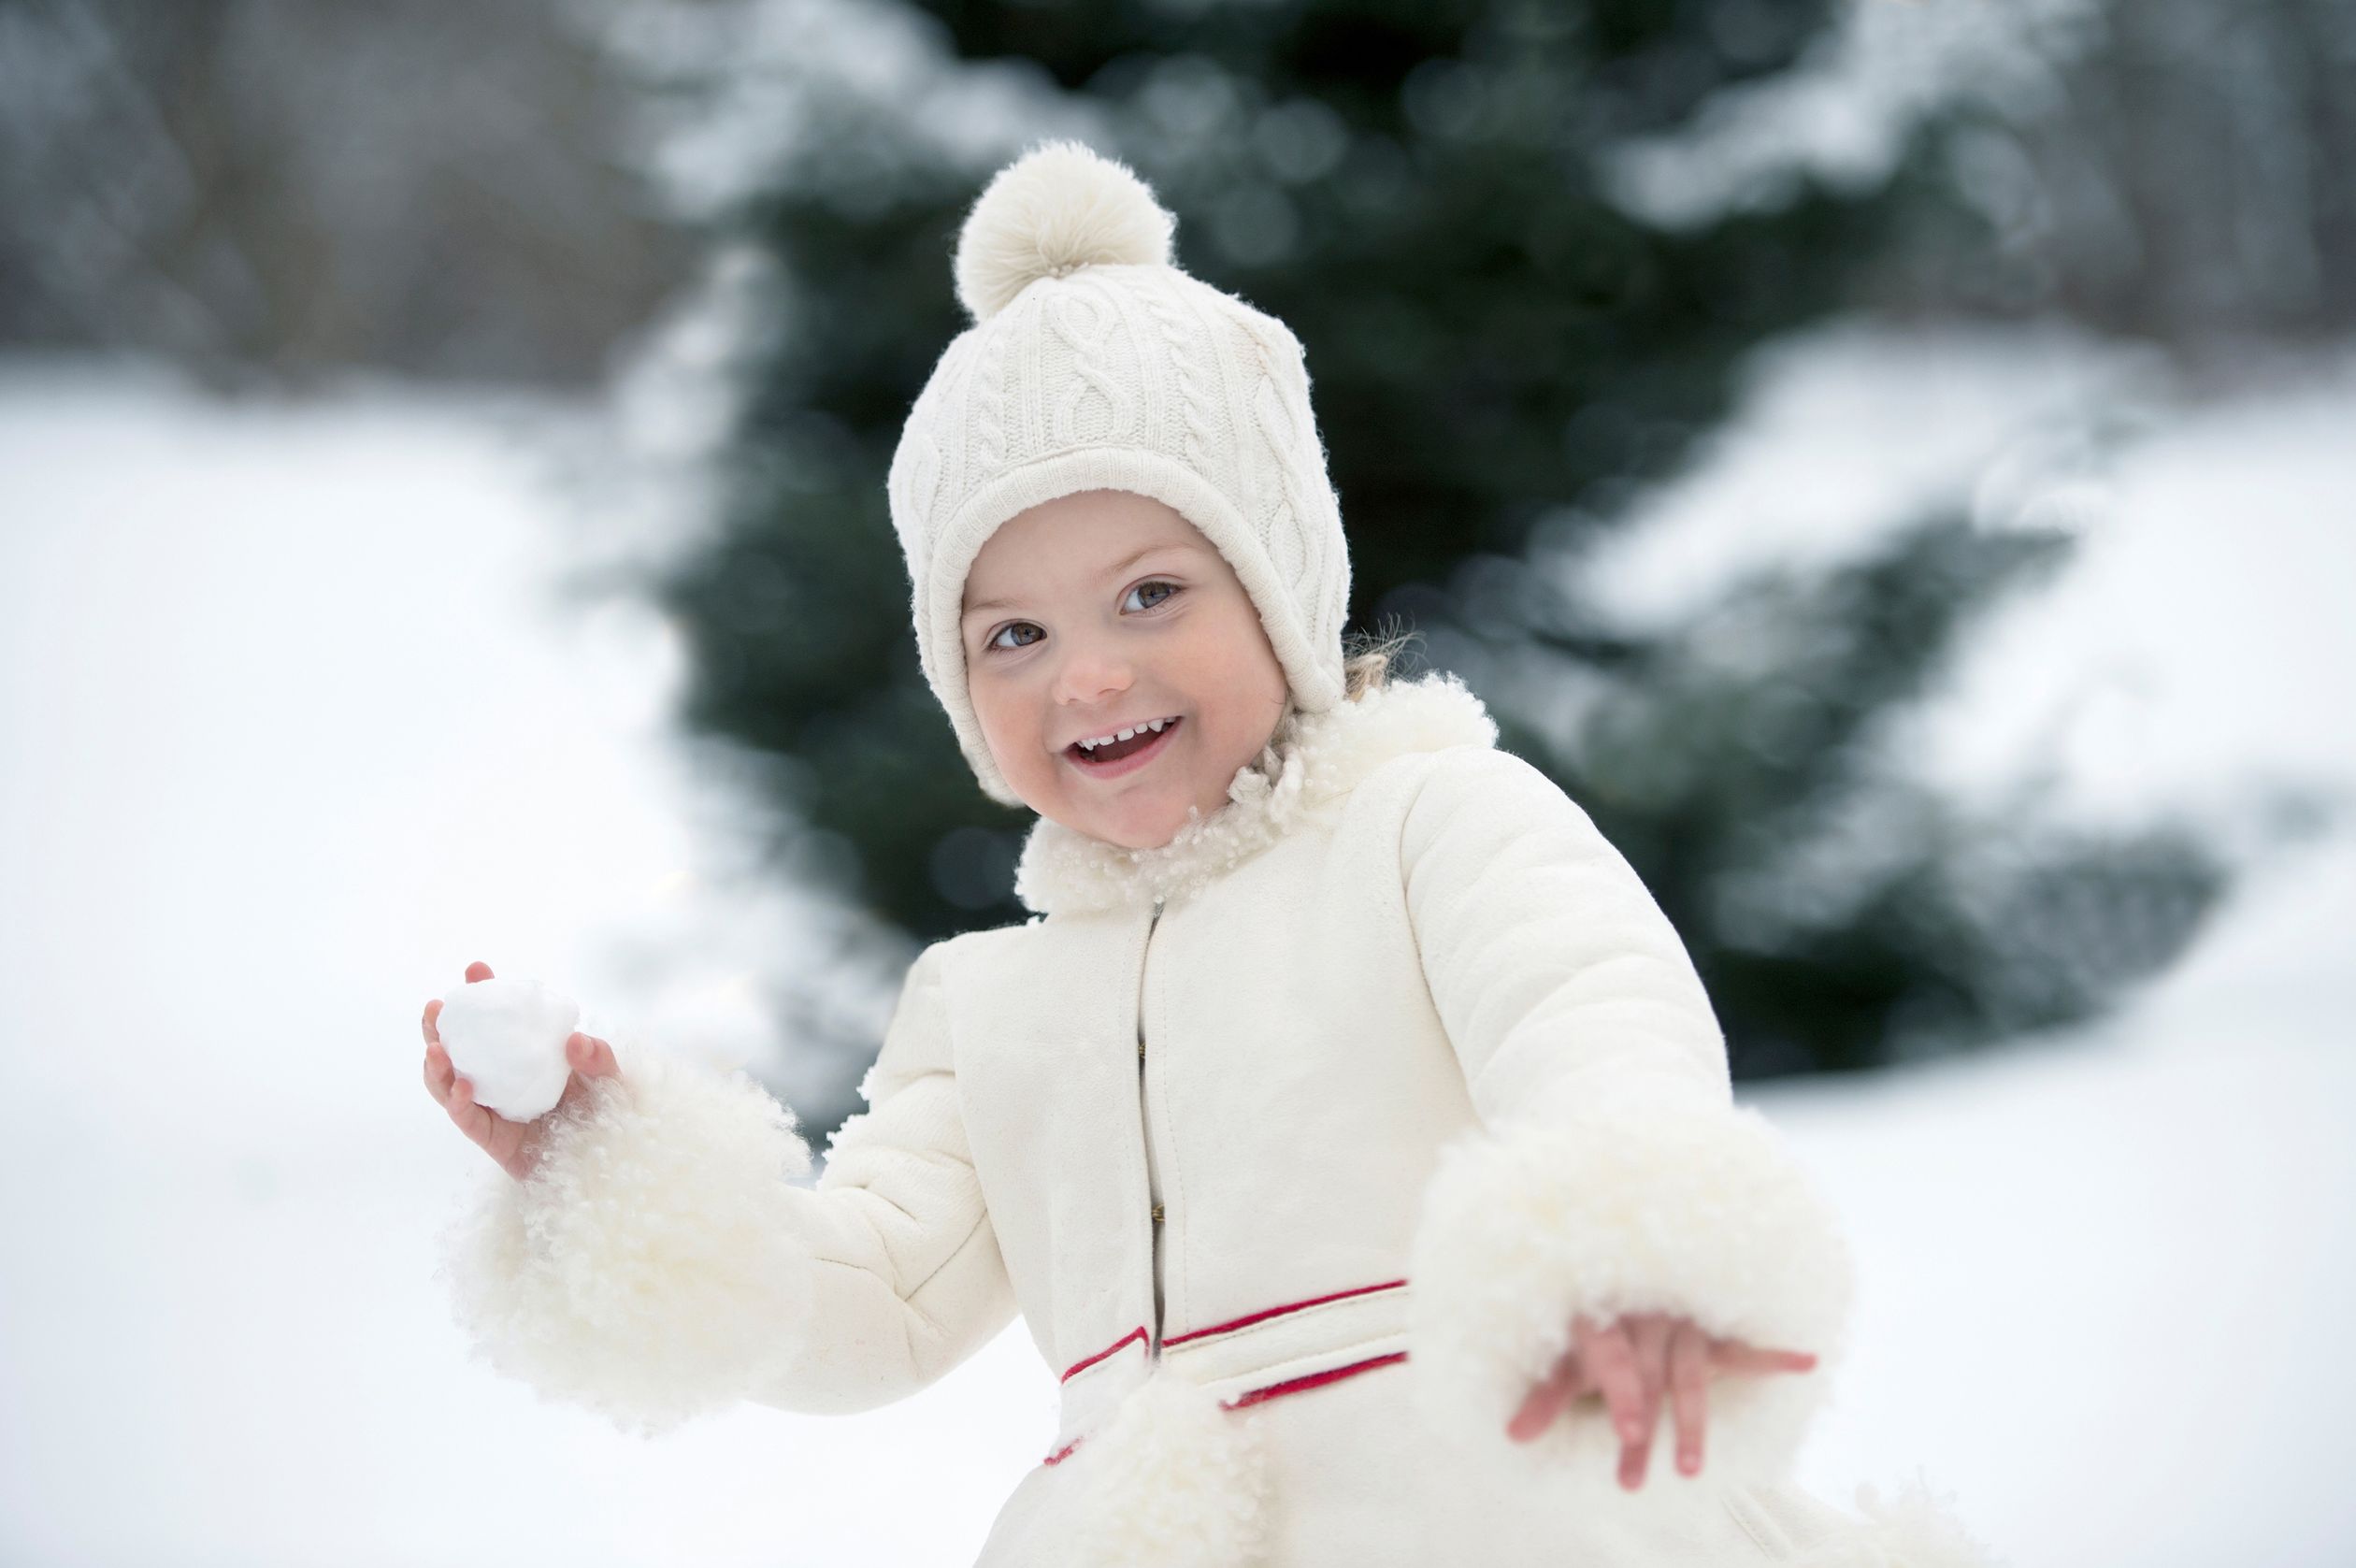 2019: Nog een foto van een driejarige prinses Estelle in de sneeuw.